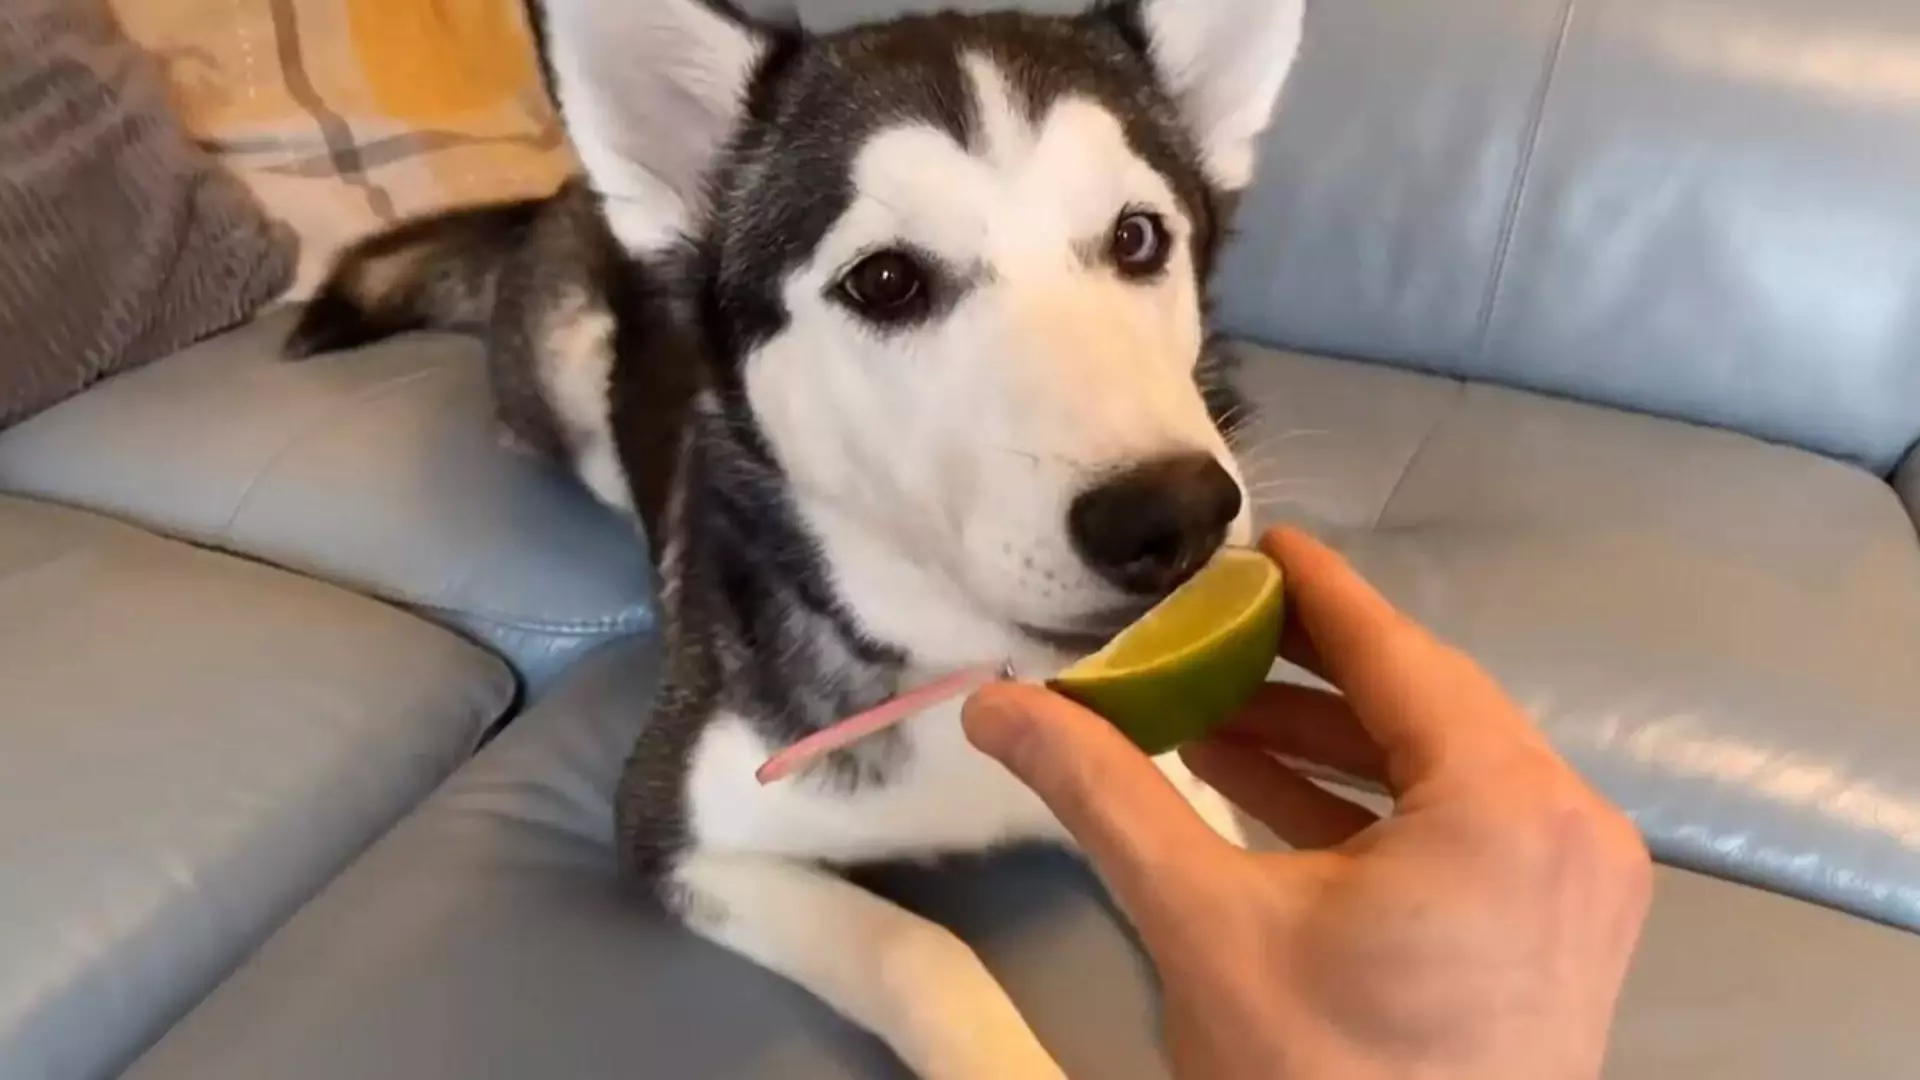 Mogen honden citroenen eten? Fruit waar honden niet meer van moeten eten